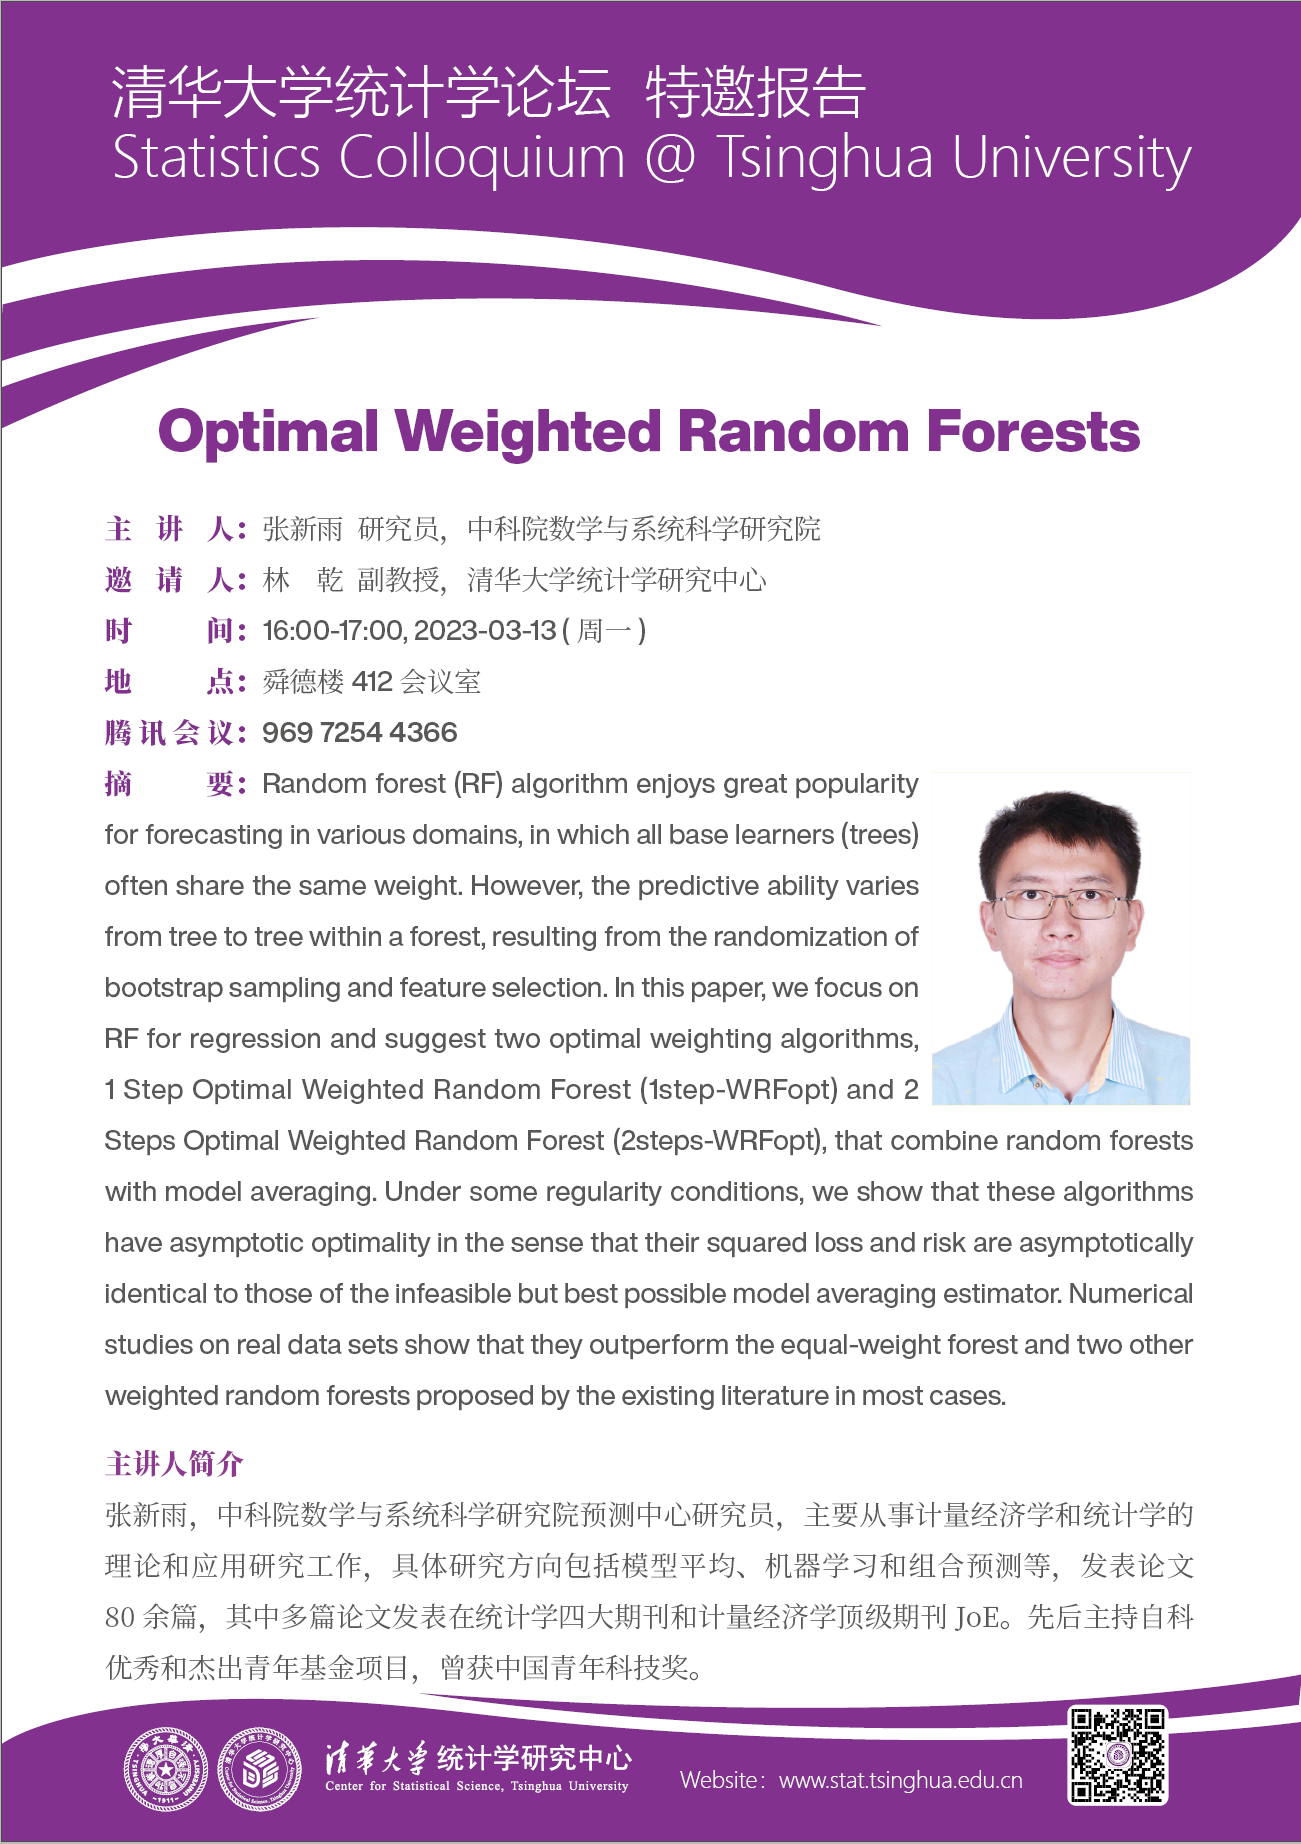 【统计学论坛】Optimal Weighted Random Forests